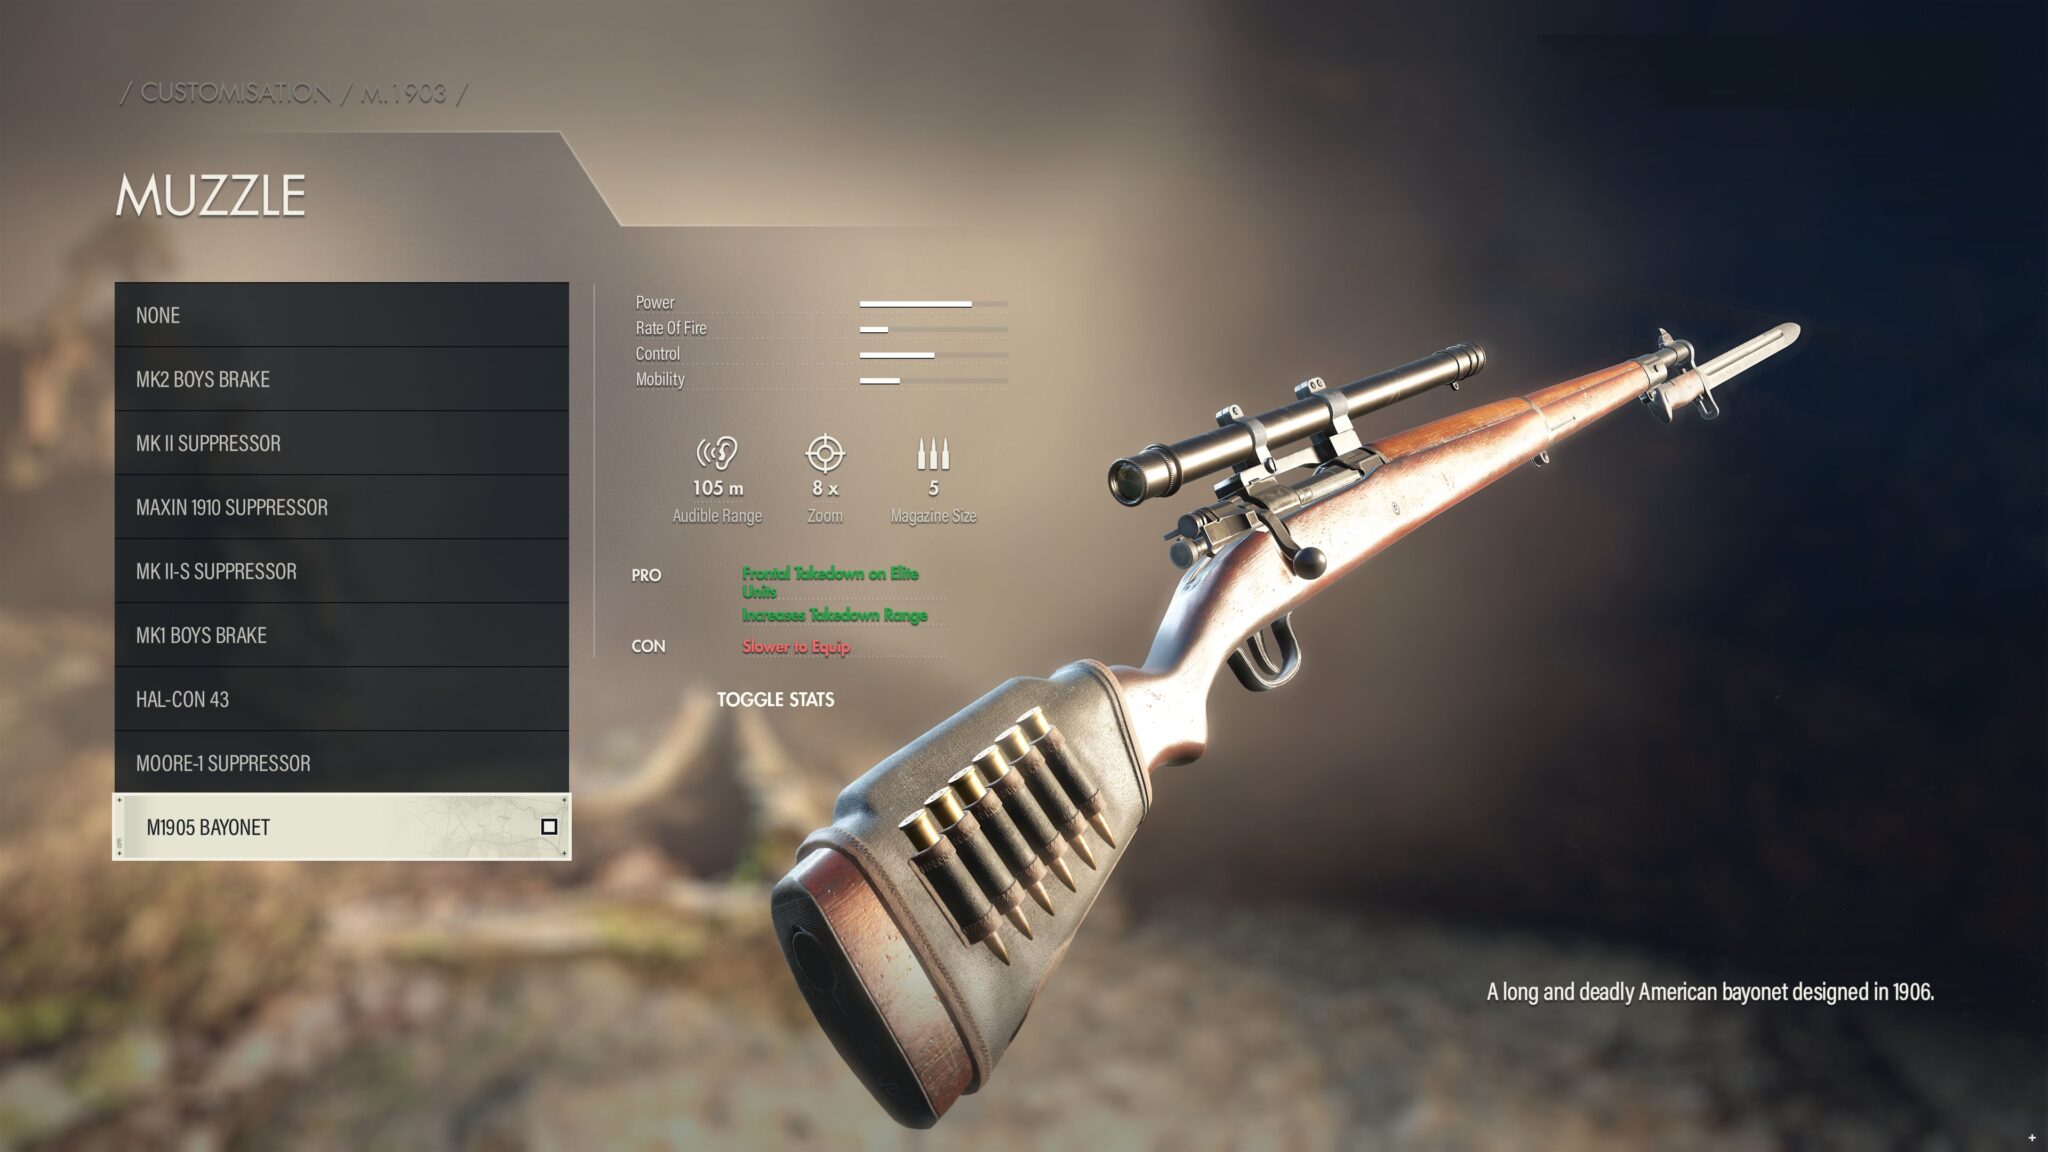 (Les différents accessoires pour les nombreuses armes de Sniper Elite 5 apportent une grande valeur de rejouabilité et une profondeur tactique au jeu. Mais il reste à voir combien de temps cela motive aussi à long terme)